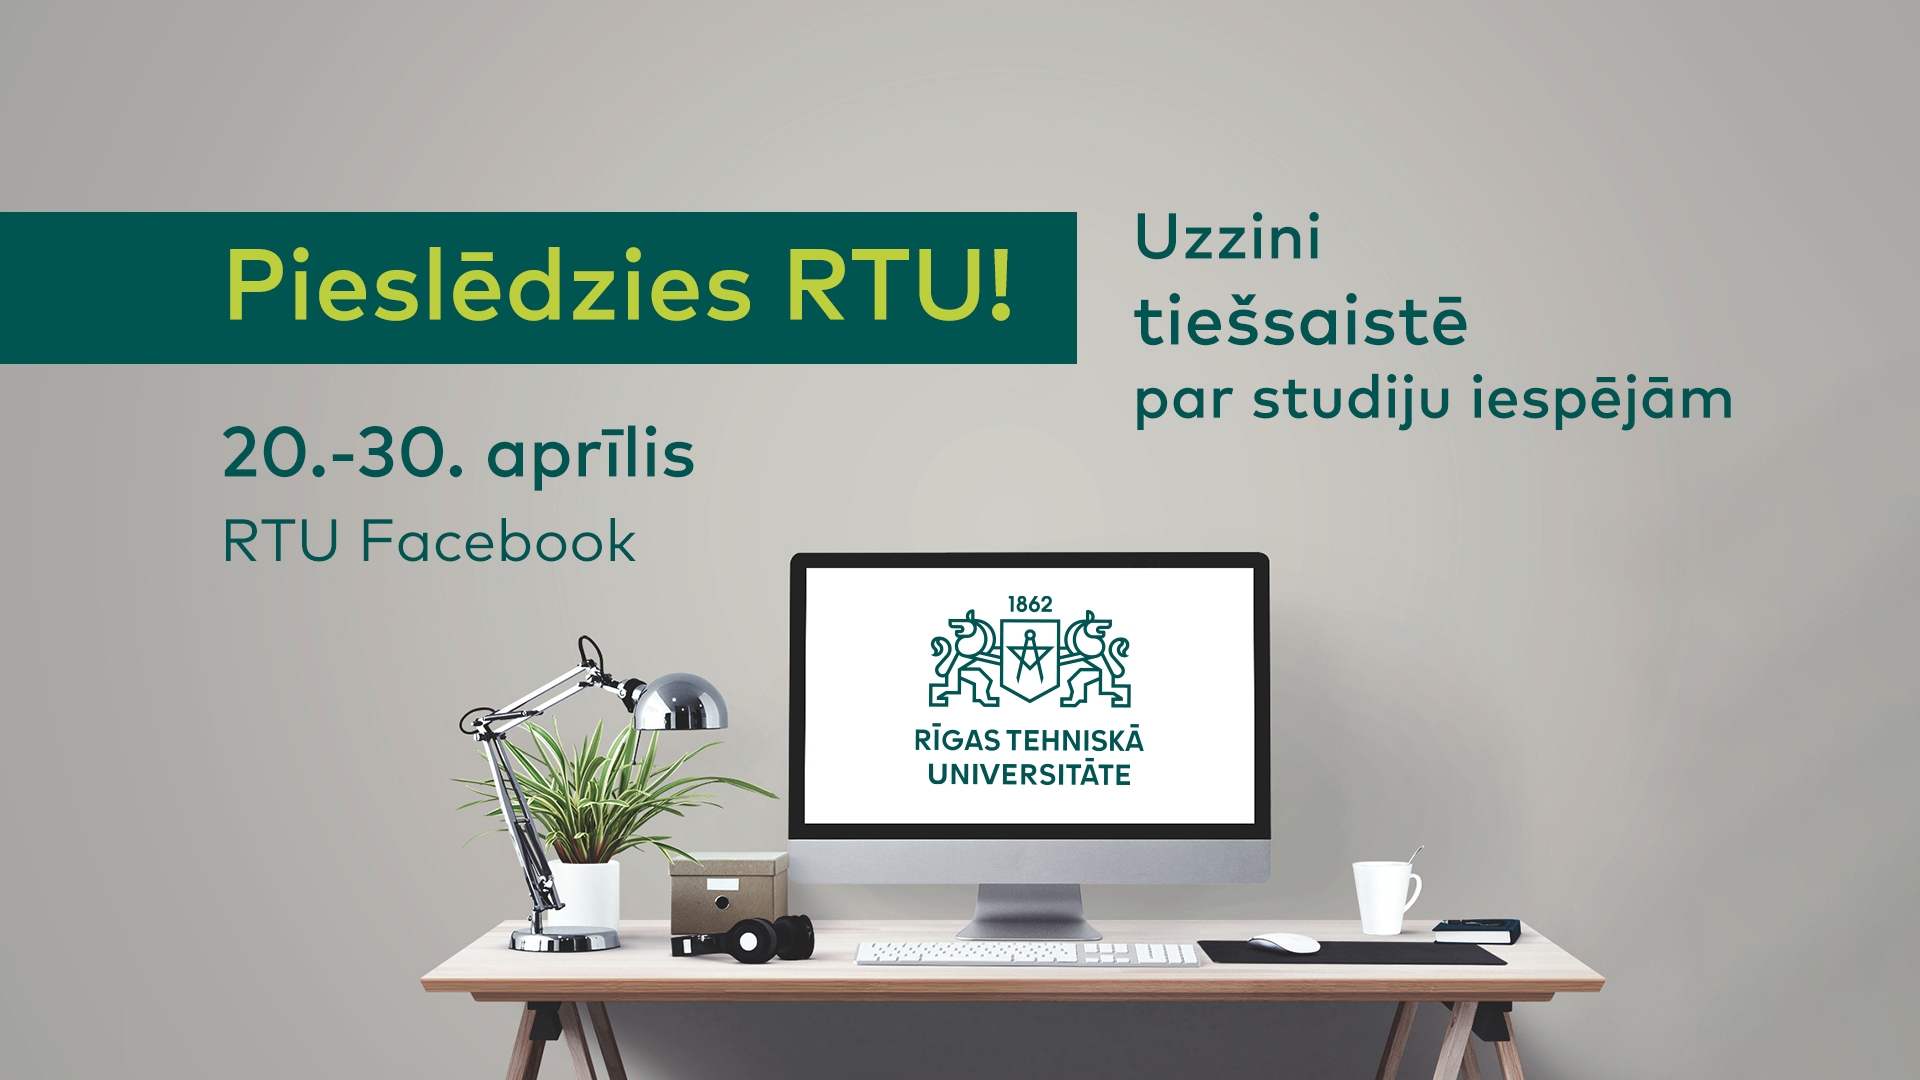 You are currently viewing Pieslēdzies RTU (Rīgas Tehniskajai universitātei)!